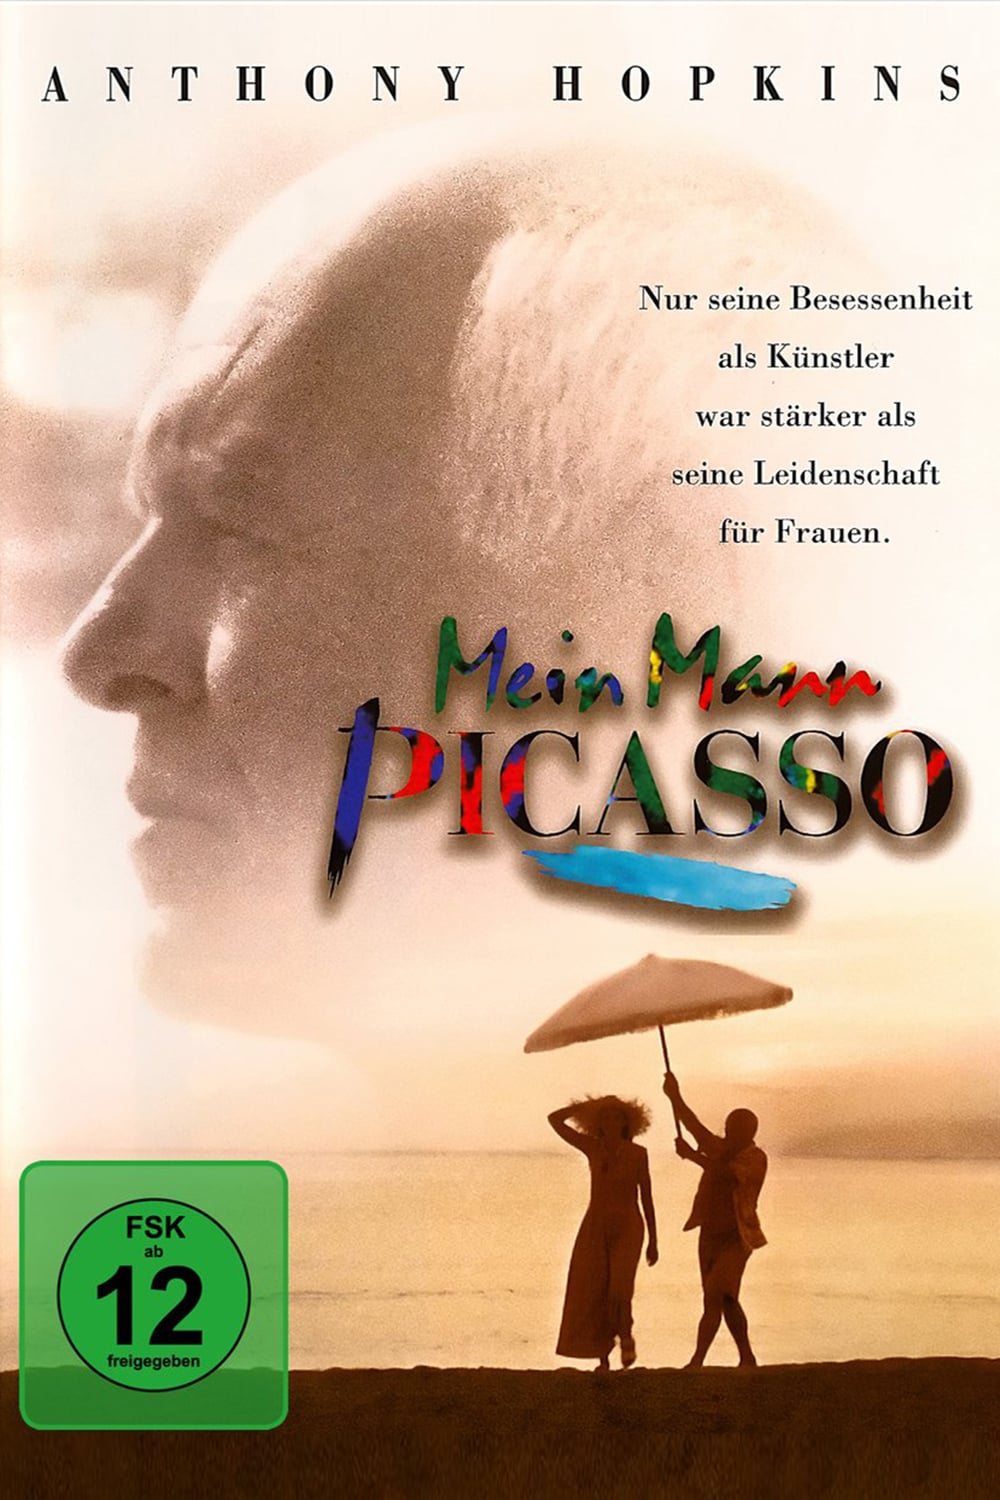 Plakat von "Mein Mann Picasso"